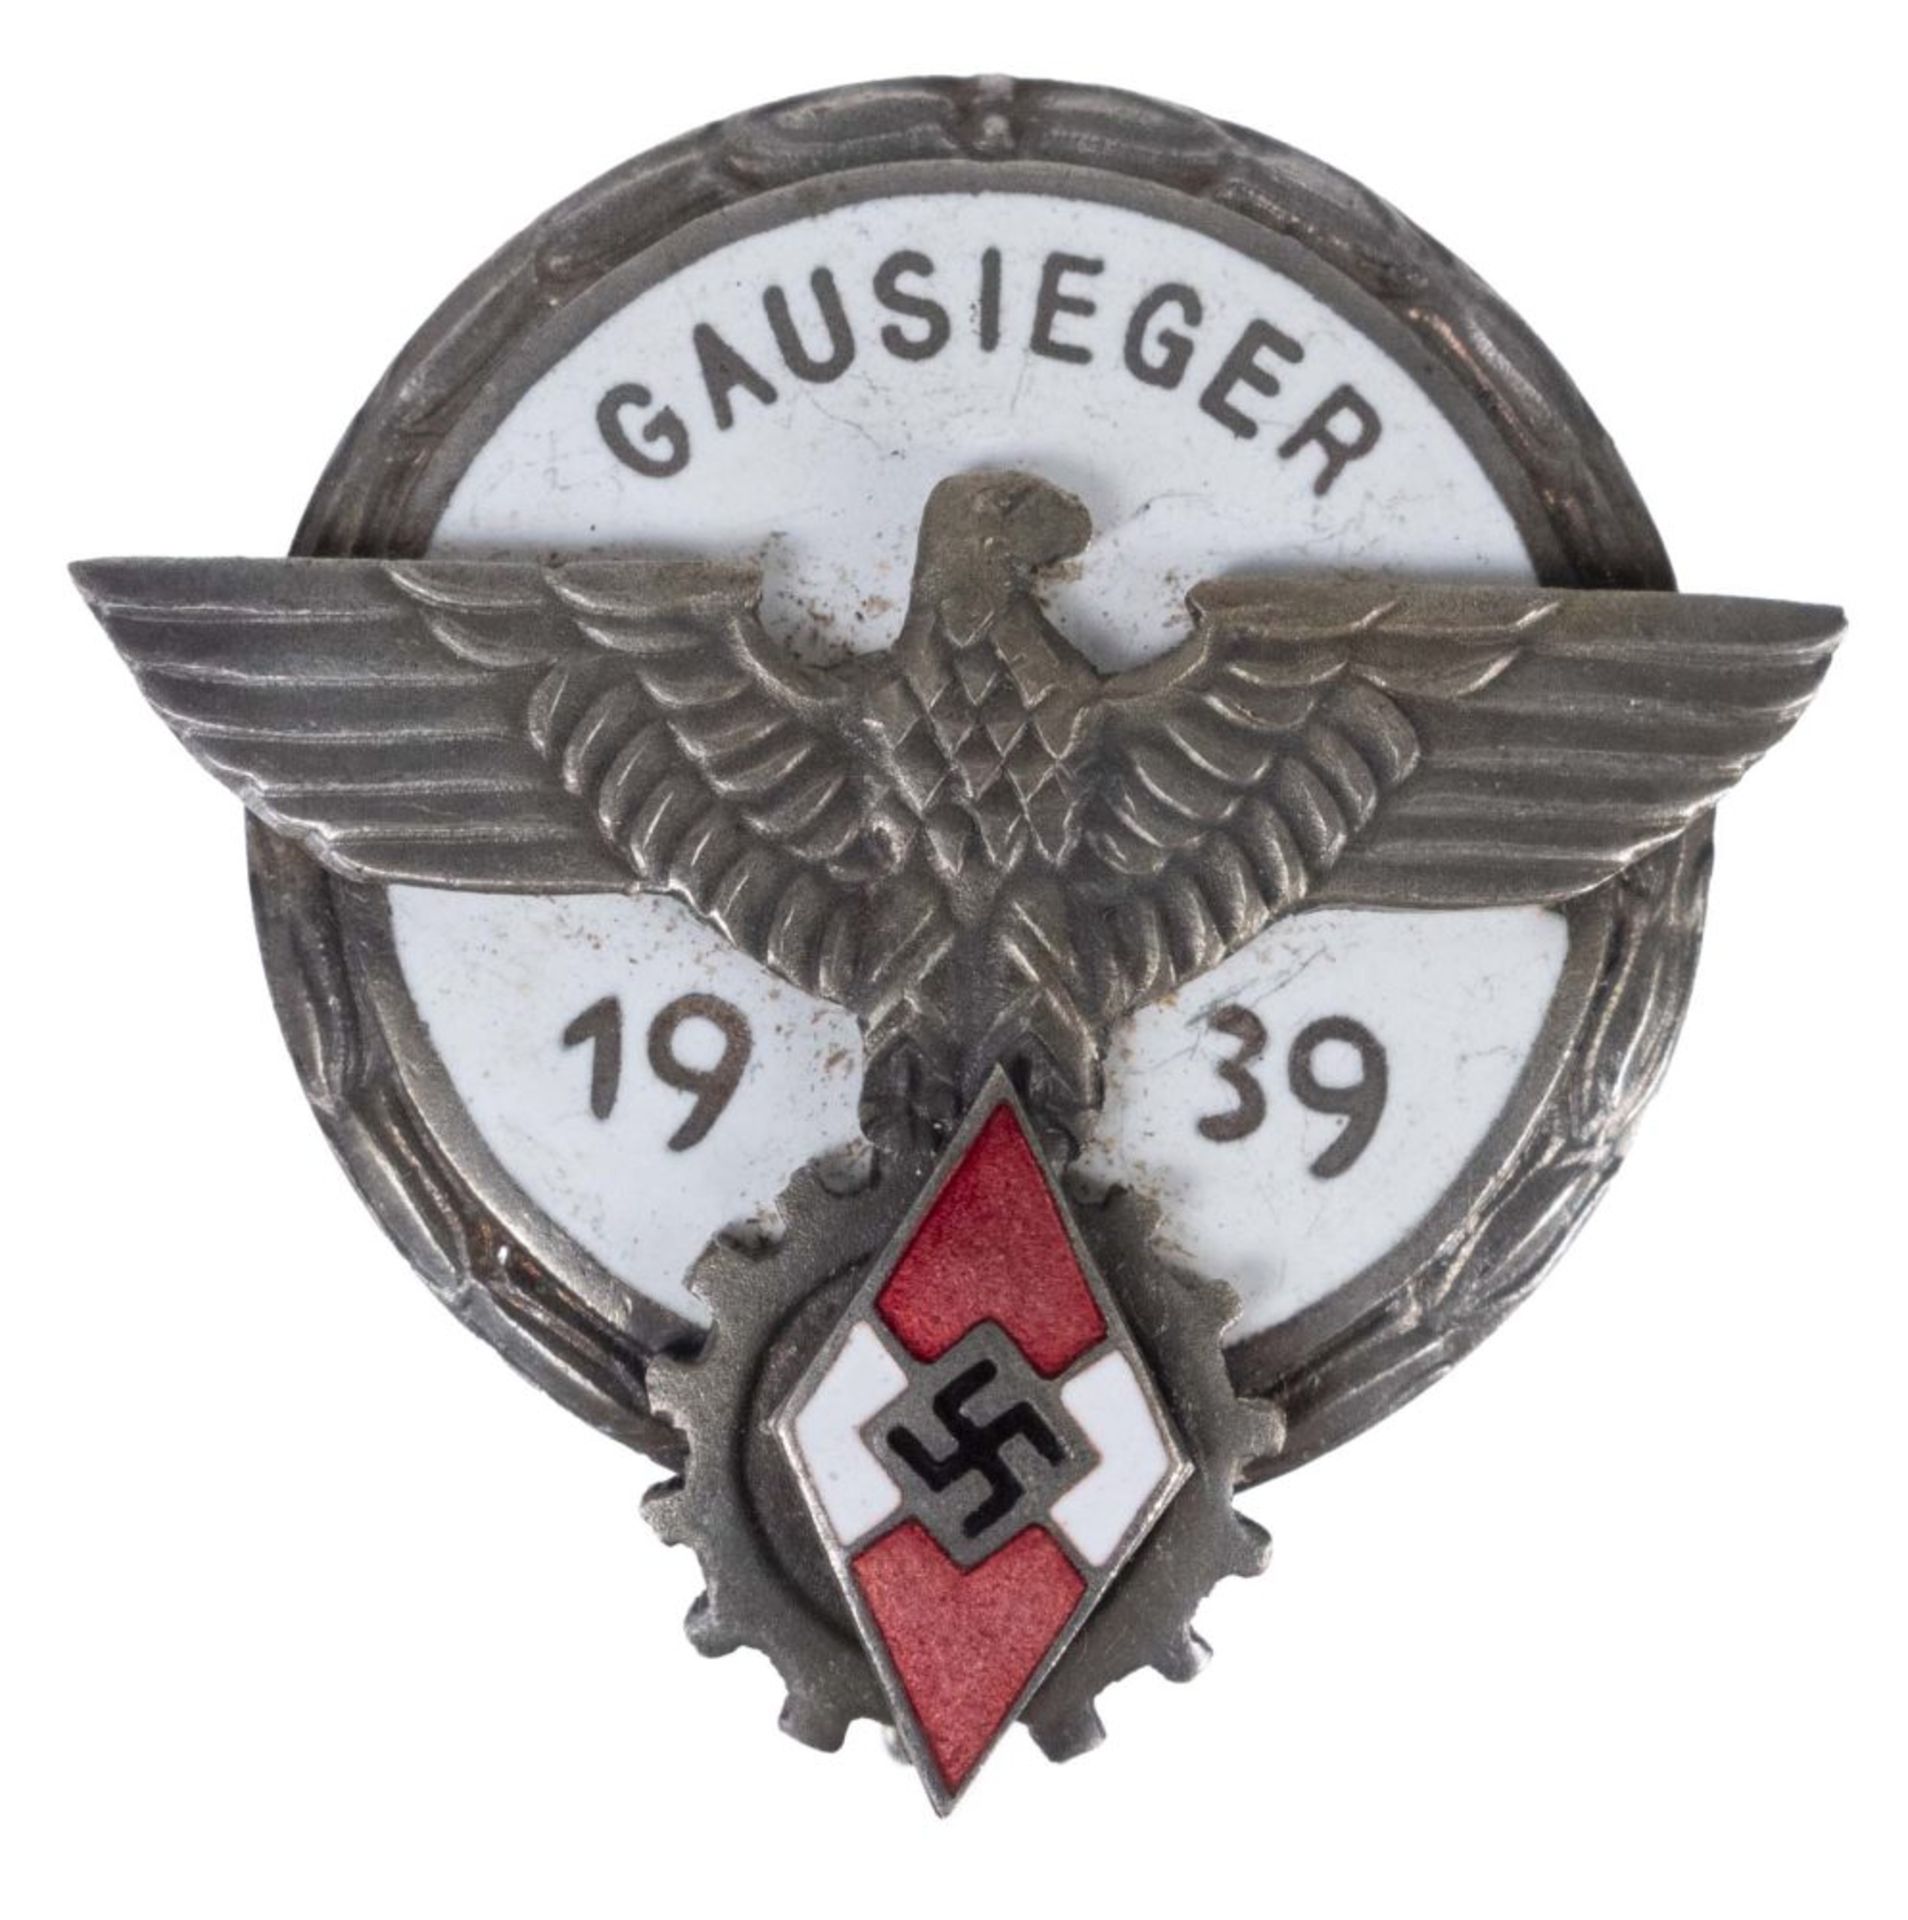 Ehrenzeichen Gausieger im Reichsberufswettkampf 1939, emailliert, rückseitig mit Hersteller " G.